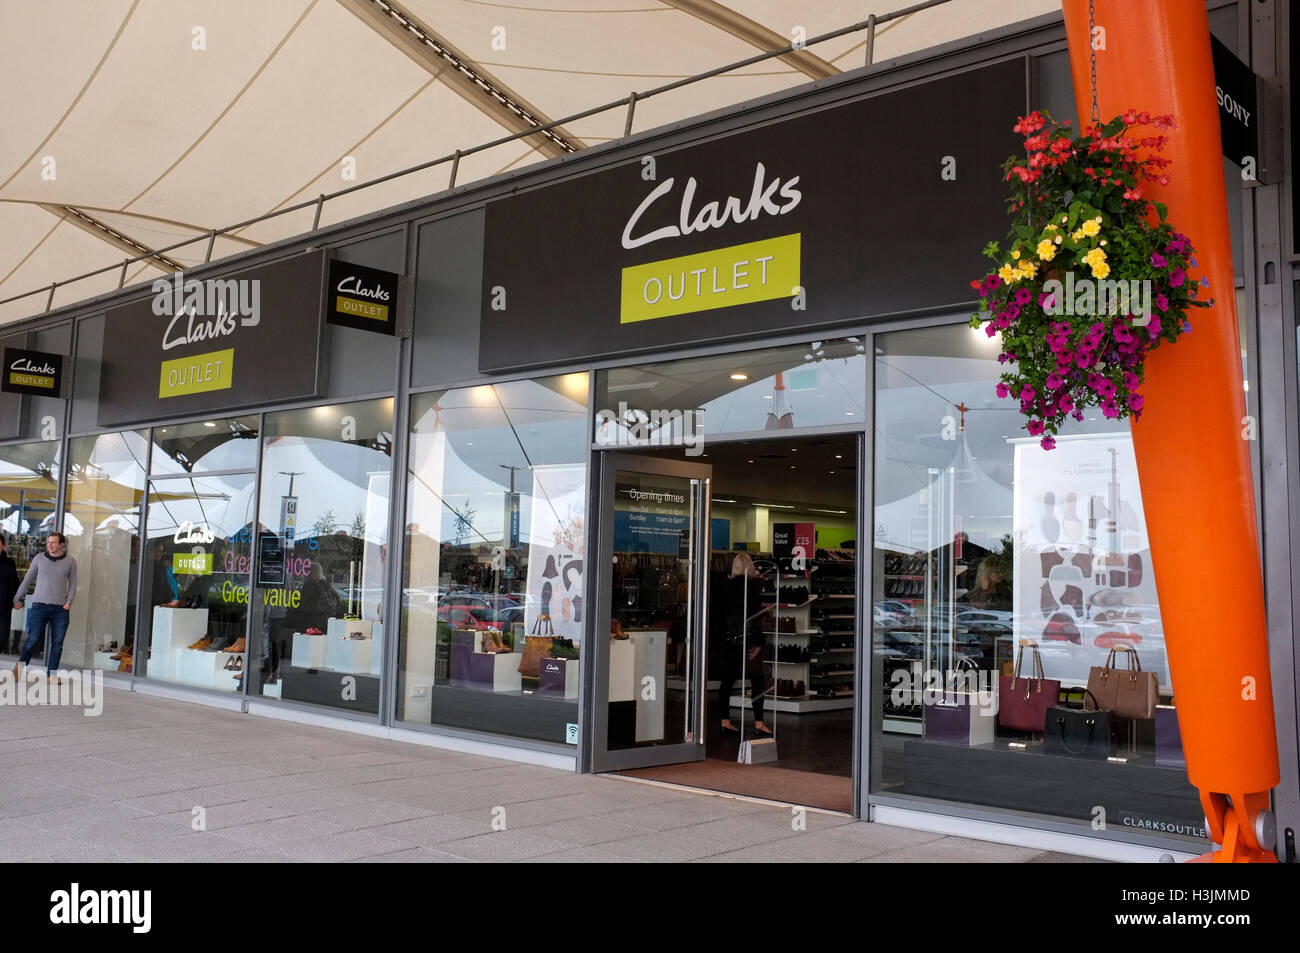 Clarks shoes outlet shop à l'ashford 